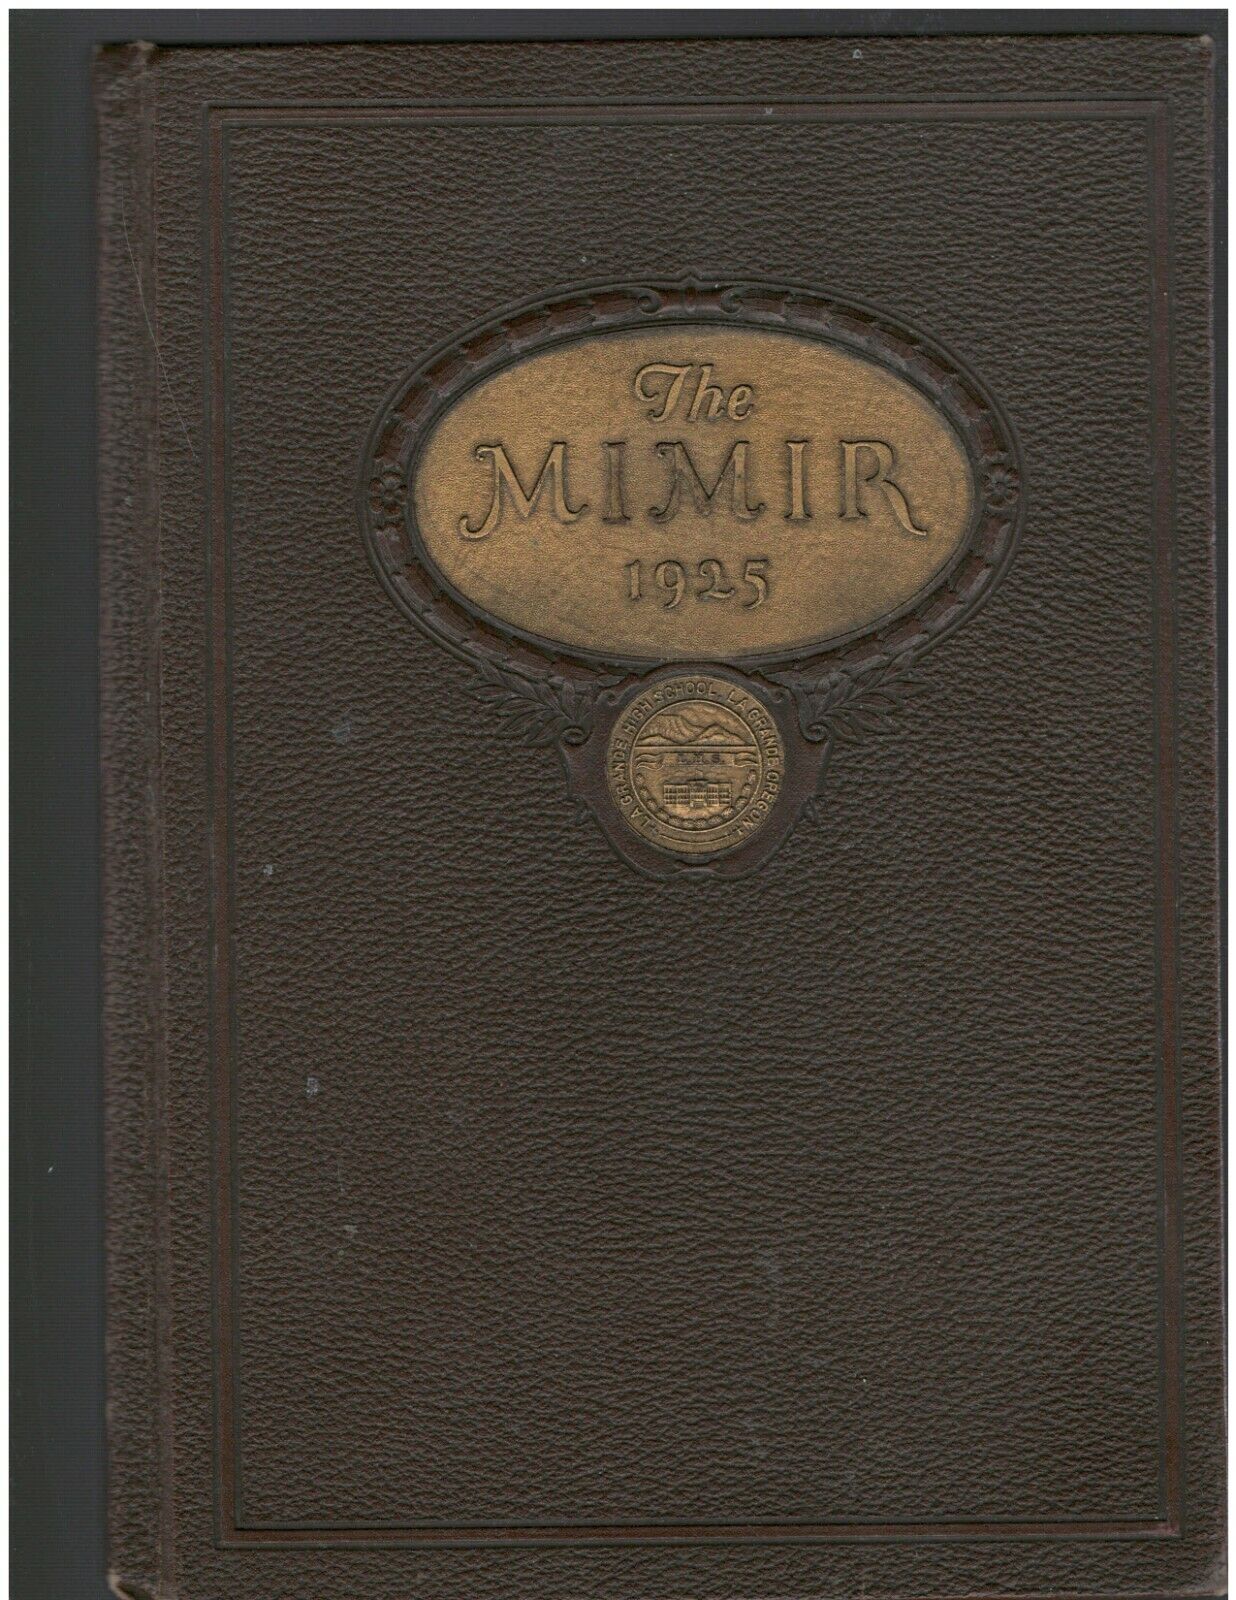 1925 La Grande High School Yearbook, Mimir, La Grande, Oregon